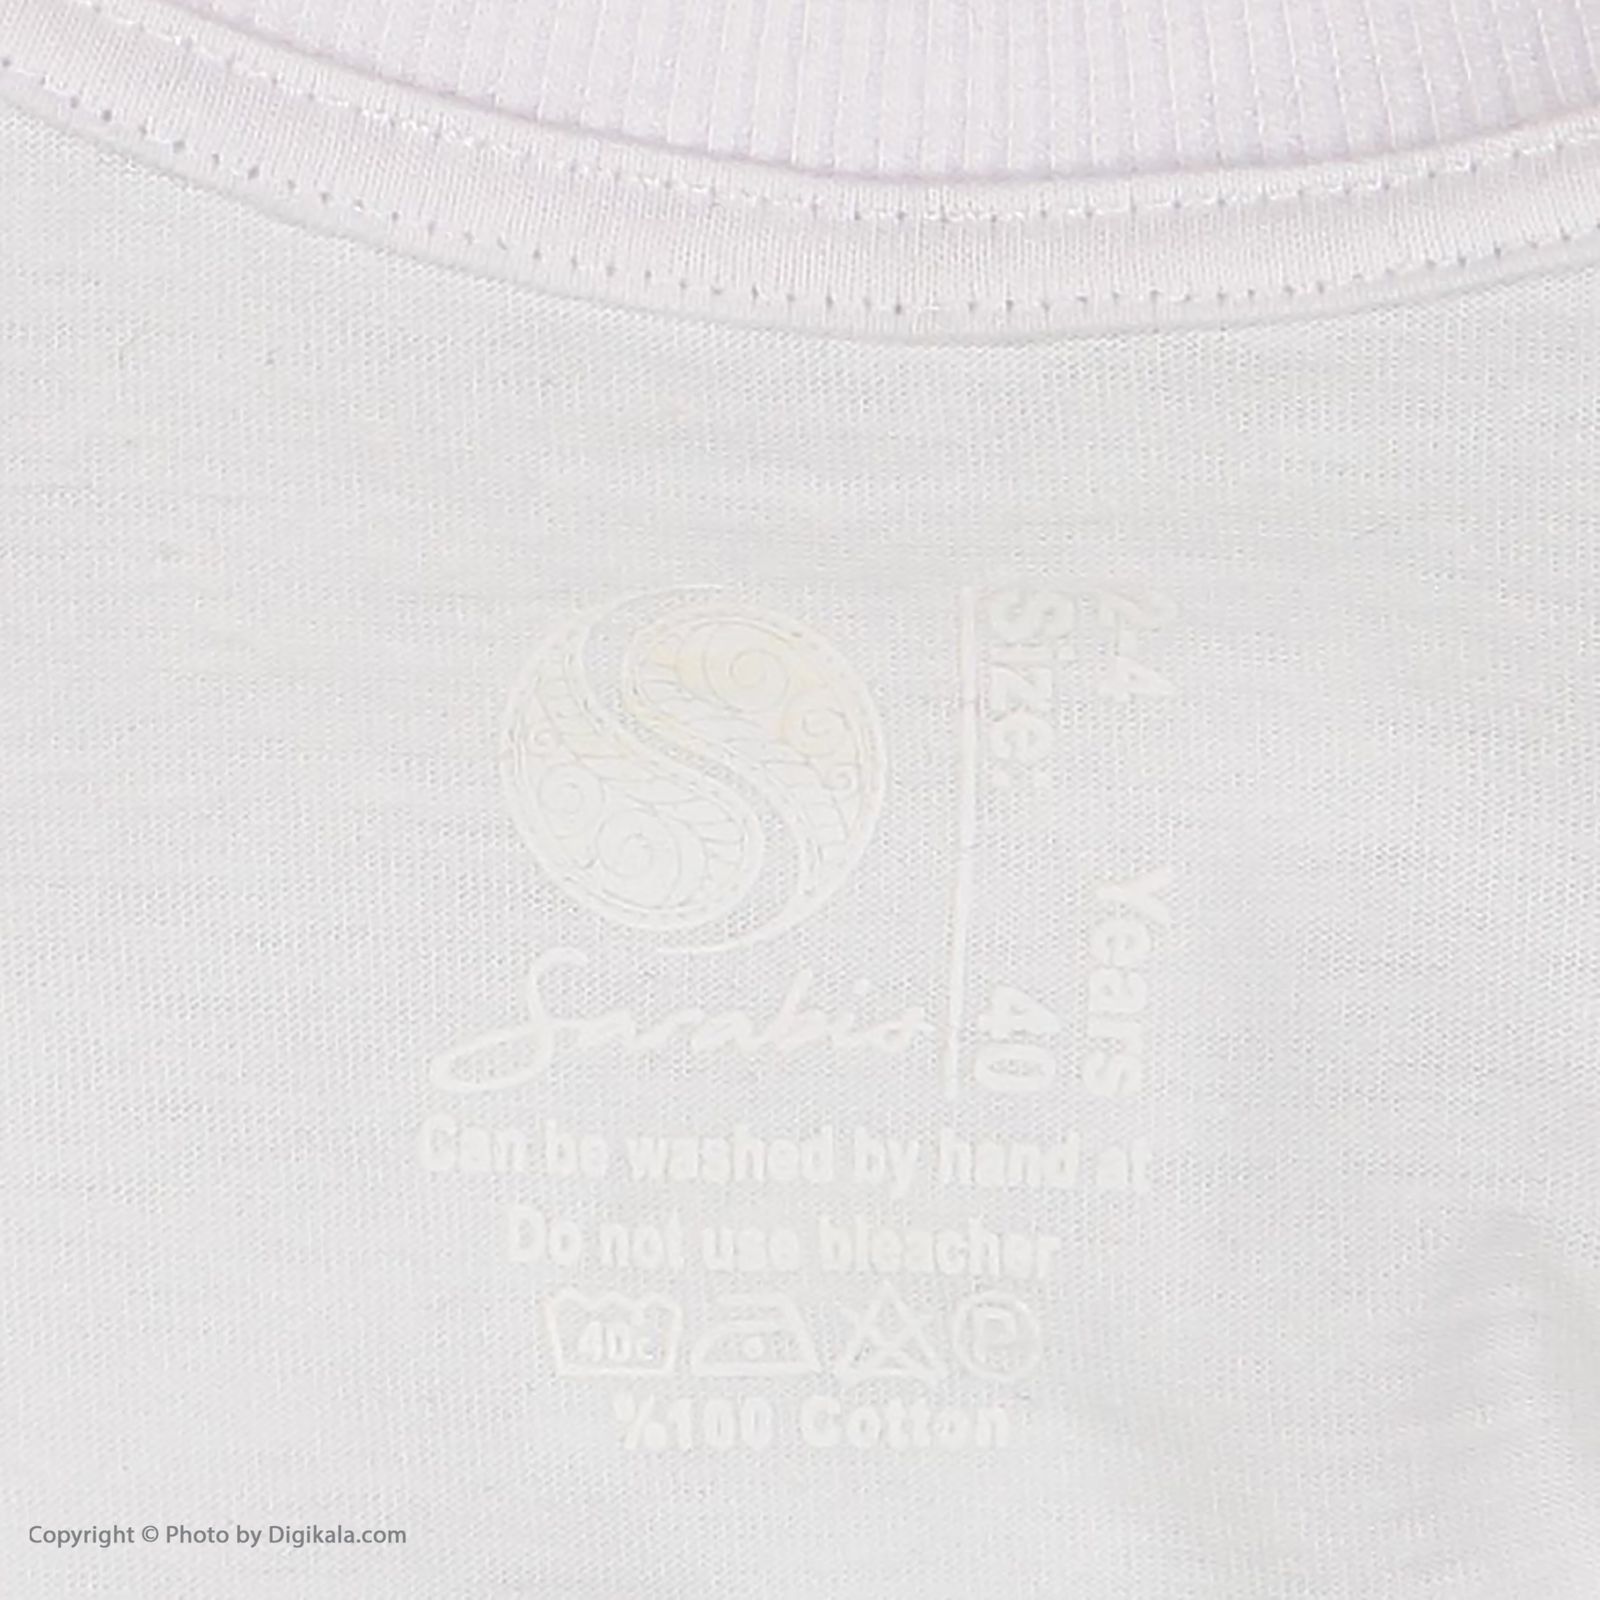 ست تی شرت و شلوارک پسرانه سون پون مدل 1391770-01 -  - 9